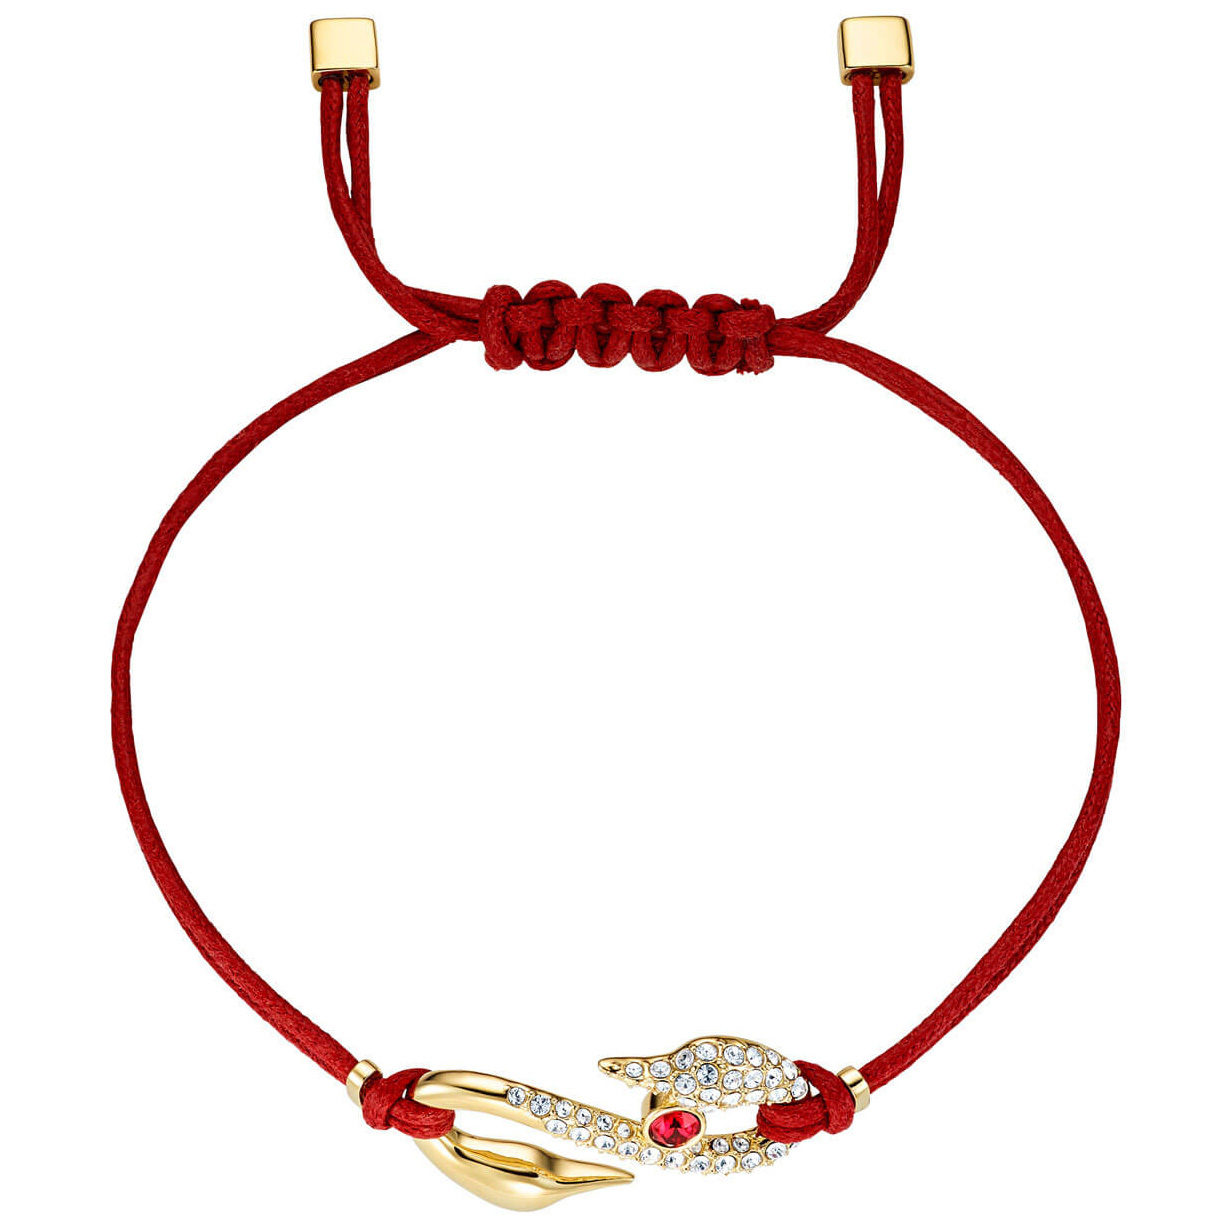 liter Kruis aan Bestuurbaar golden necklace with pendant 5508530 - WatchesnJewellery.com